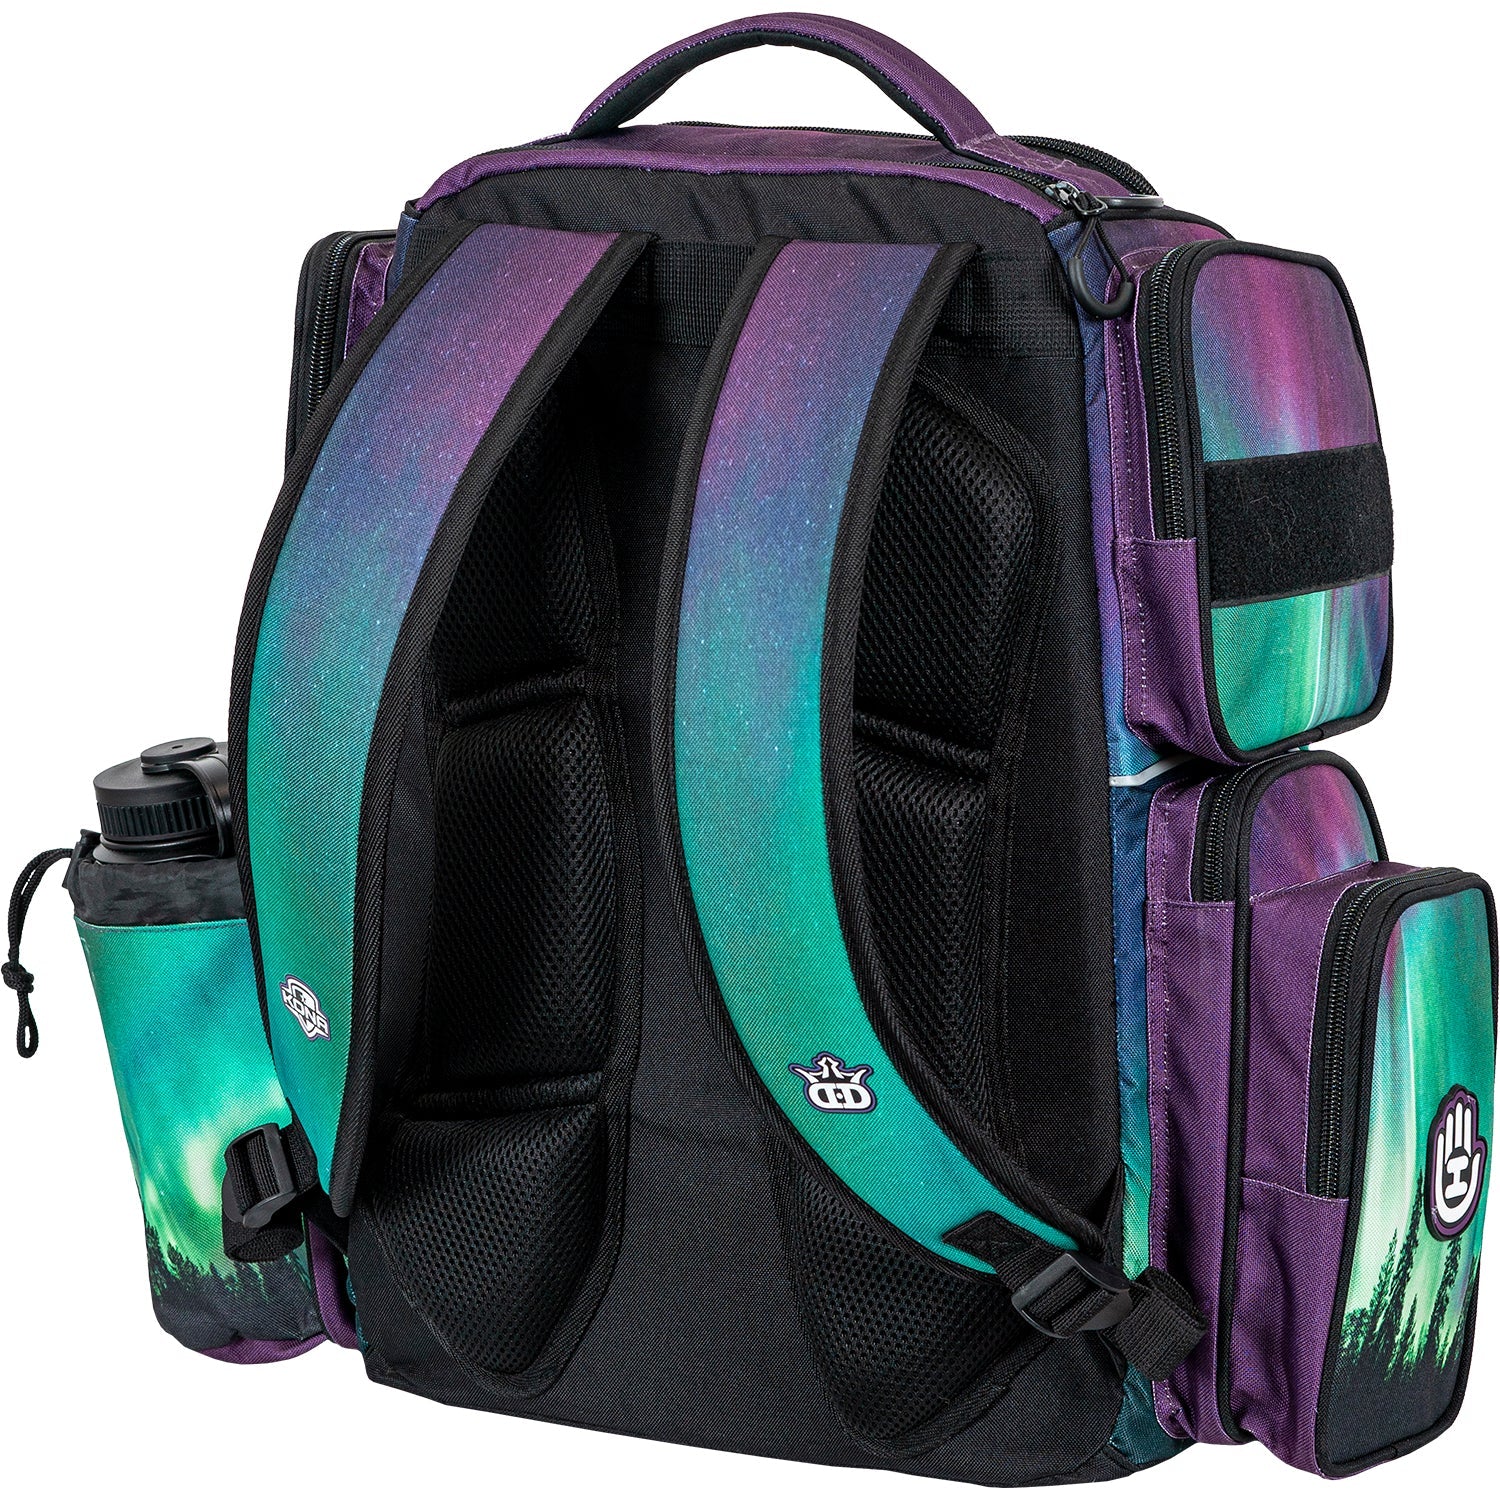 Handeye Supply Co Mission Rig Backpack Kona Panis Team Series Aurora